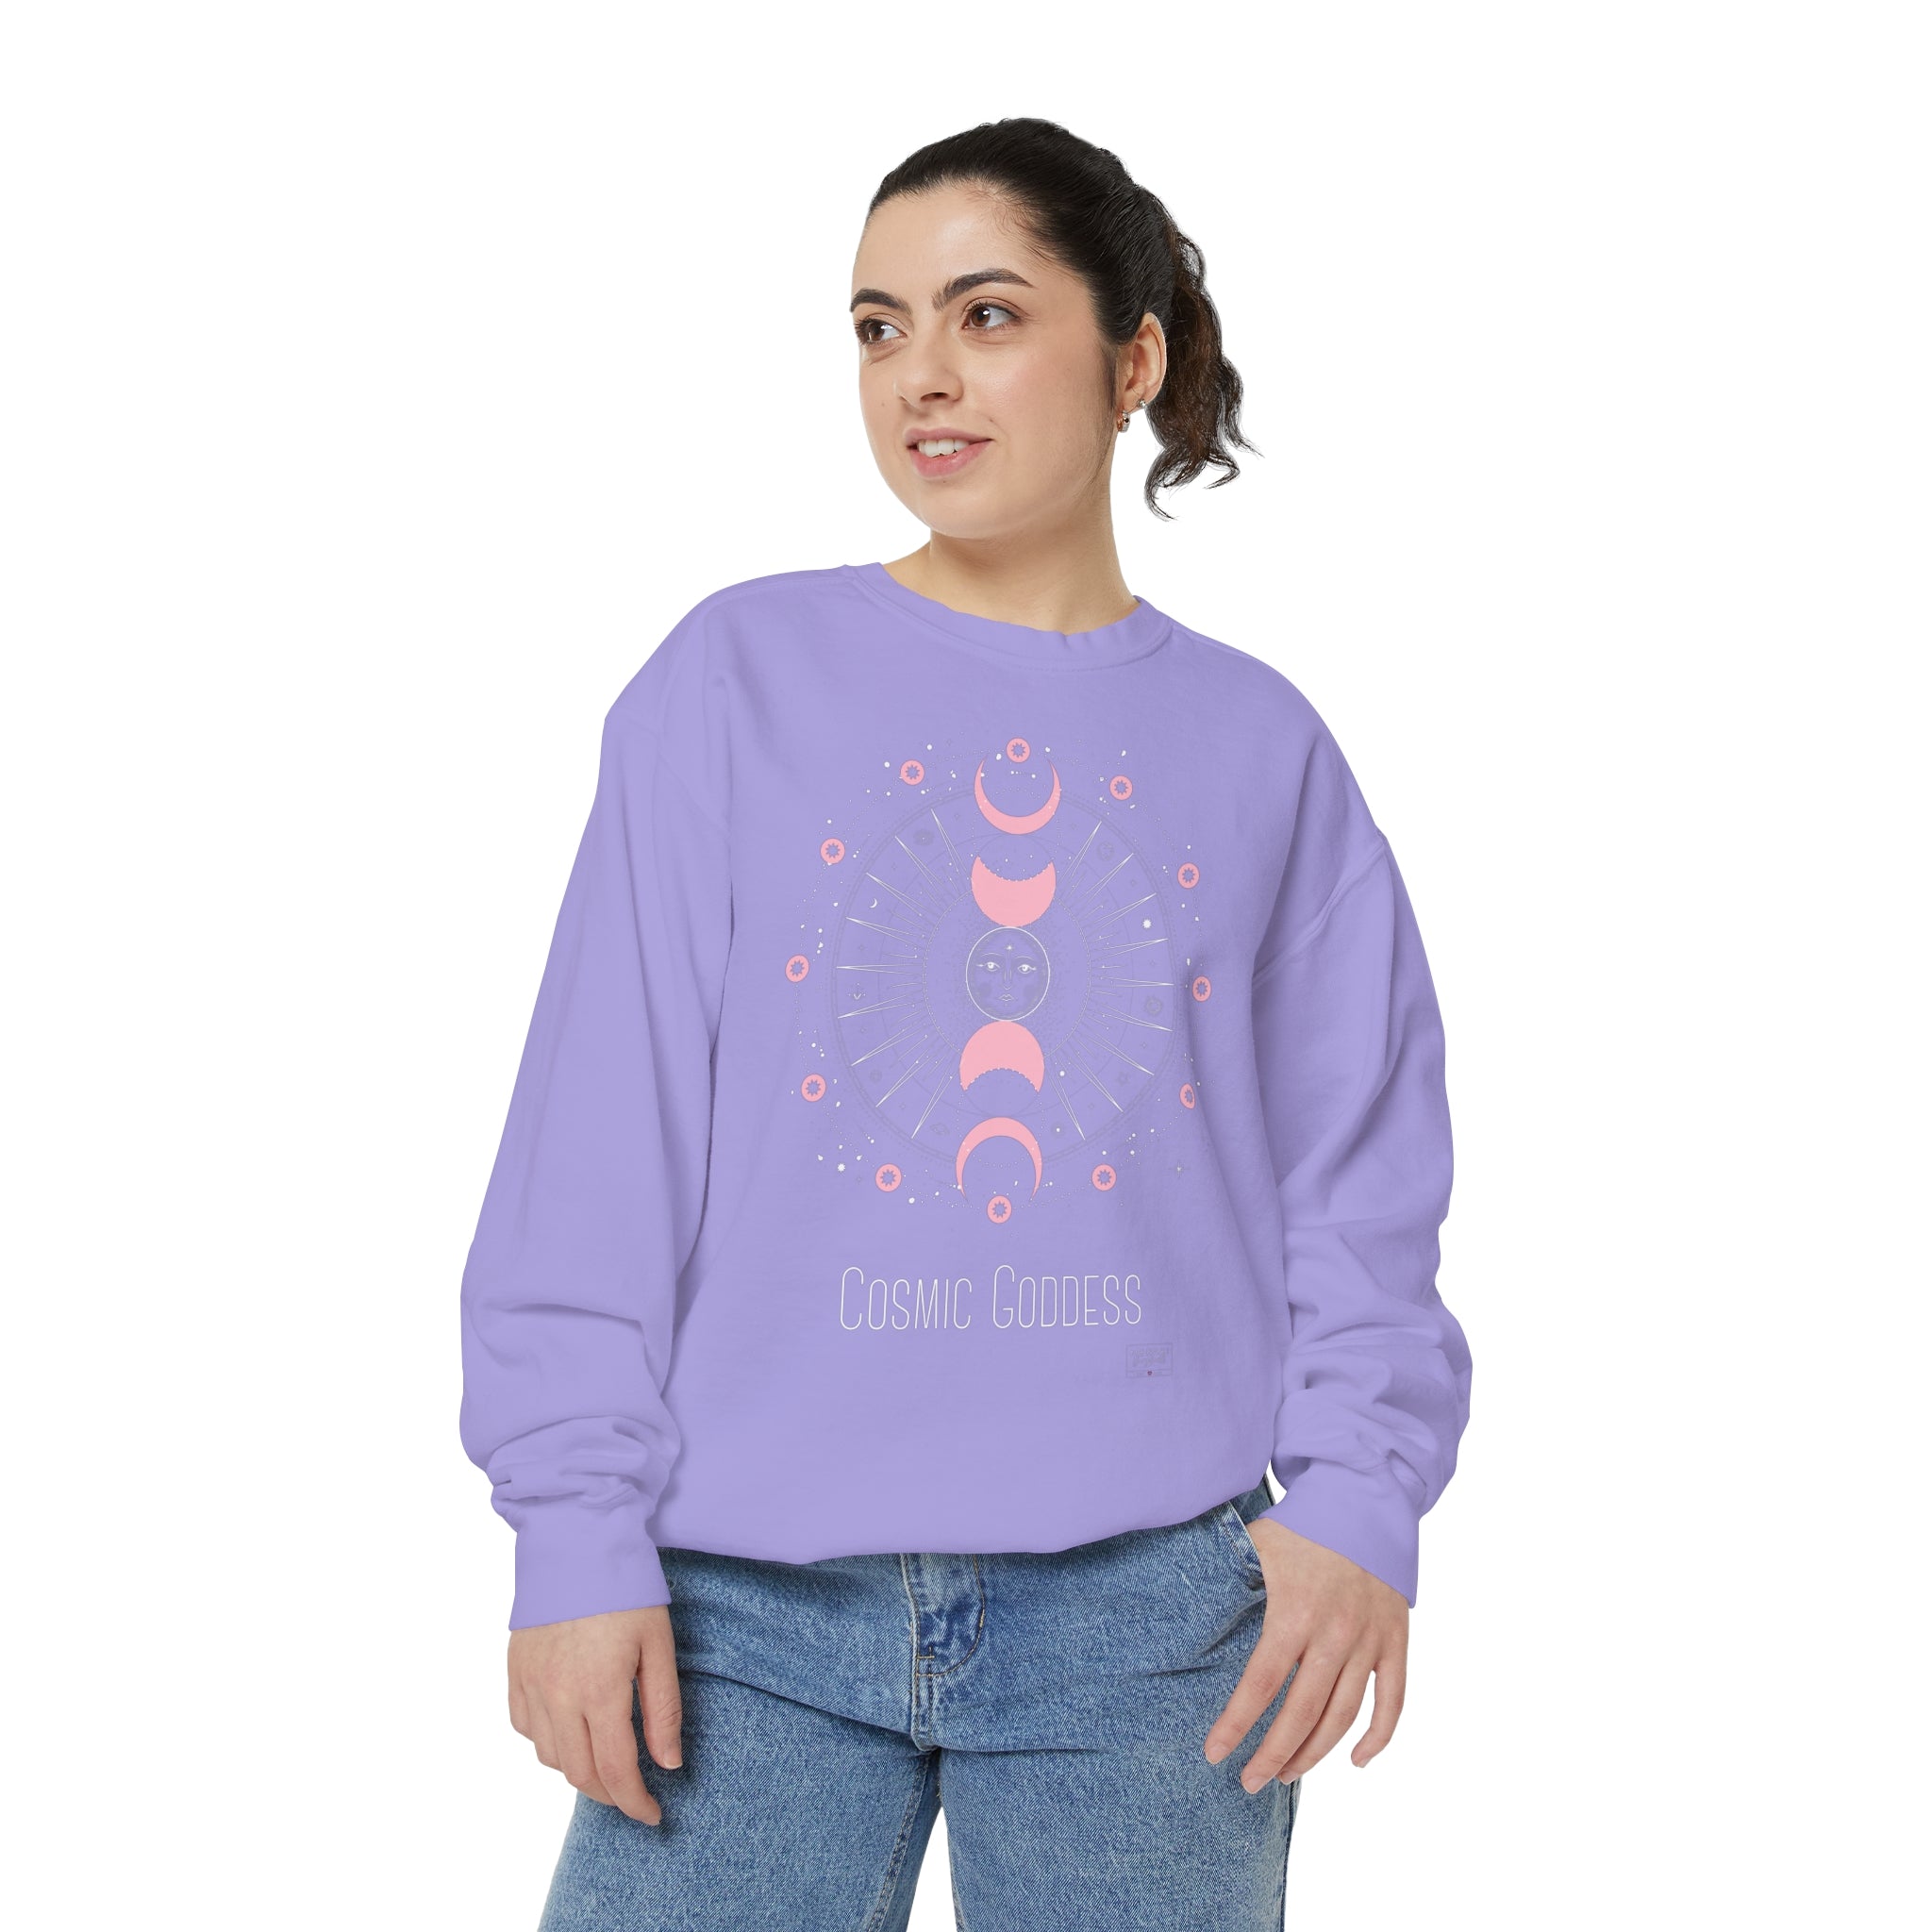 Unisex Cosmic Goddess Sweatshirt